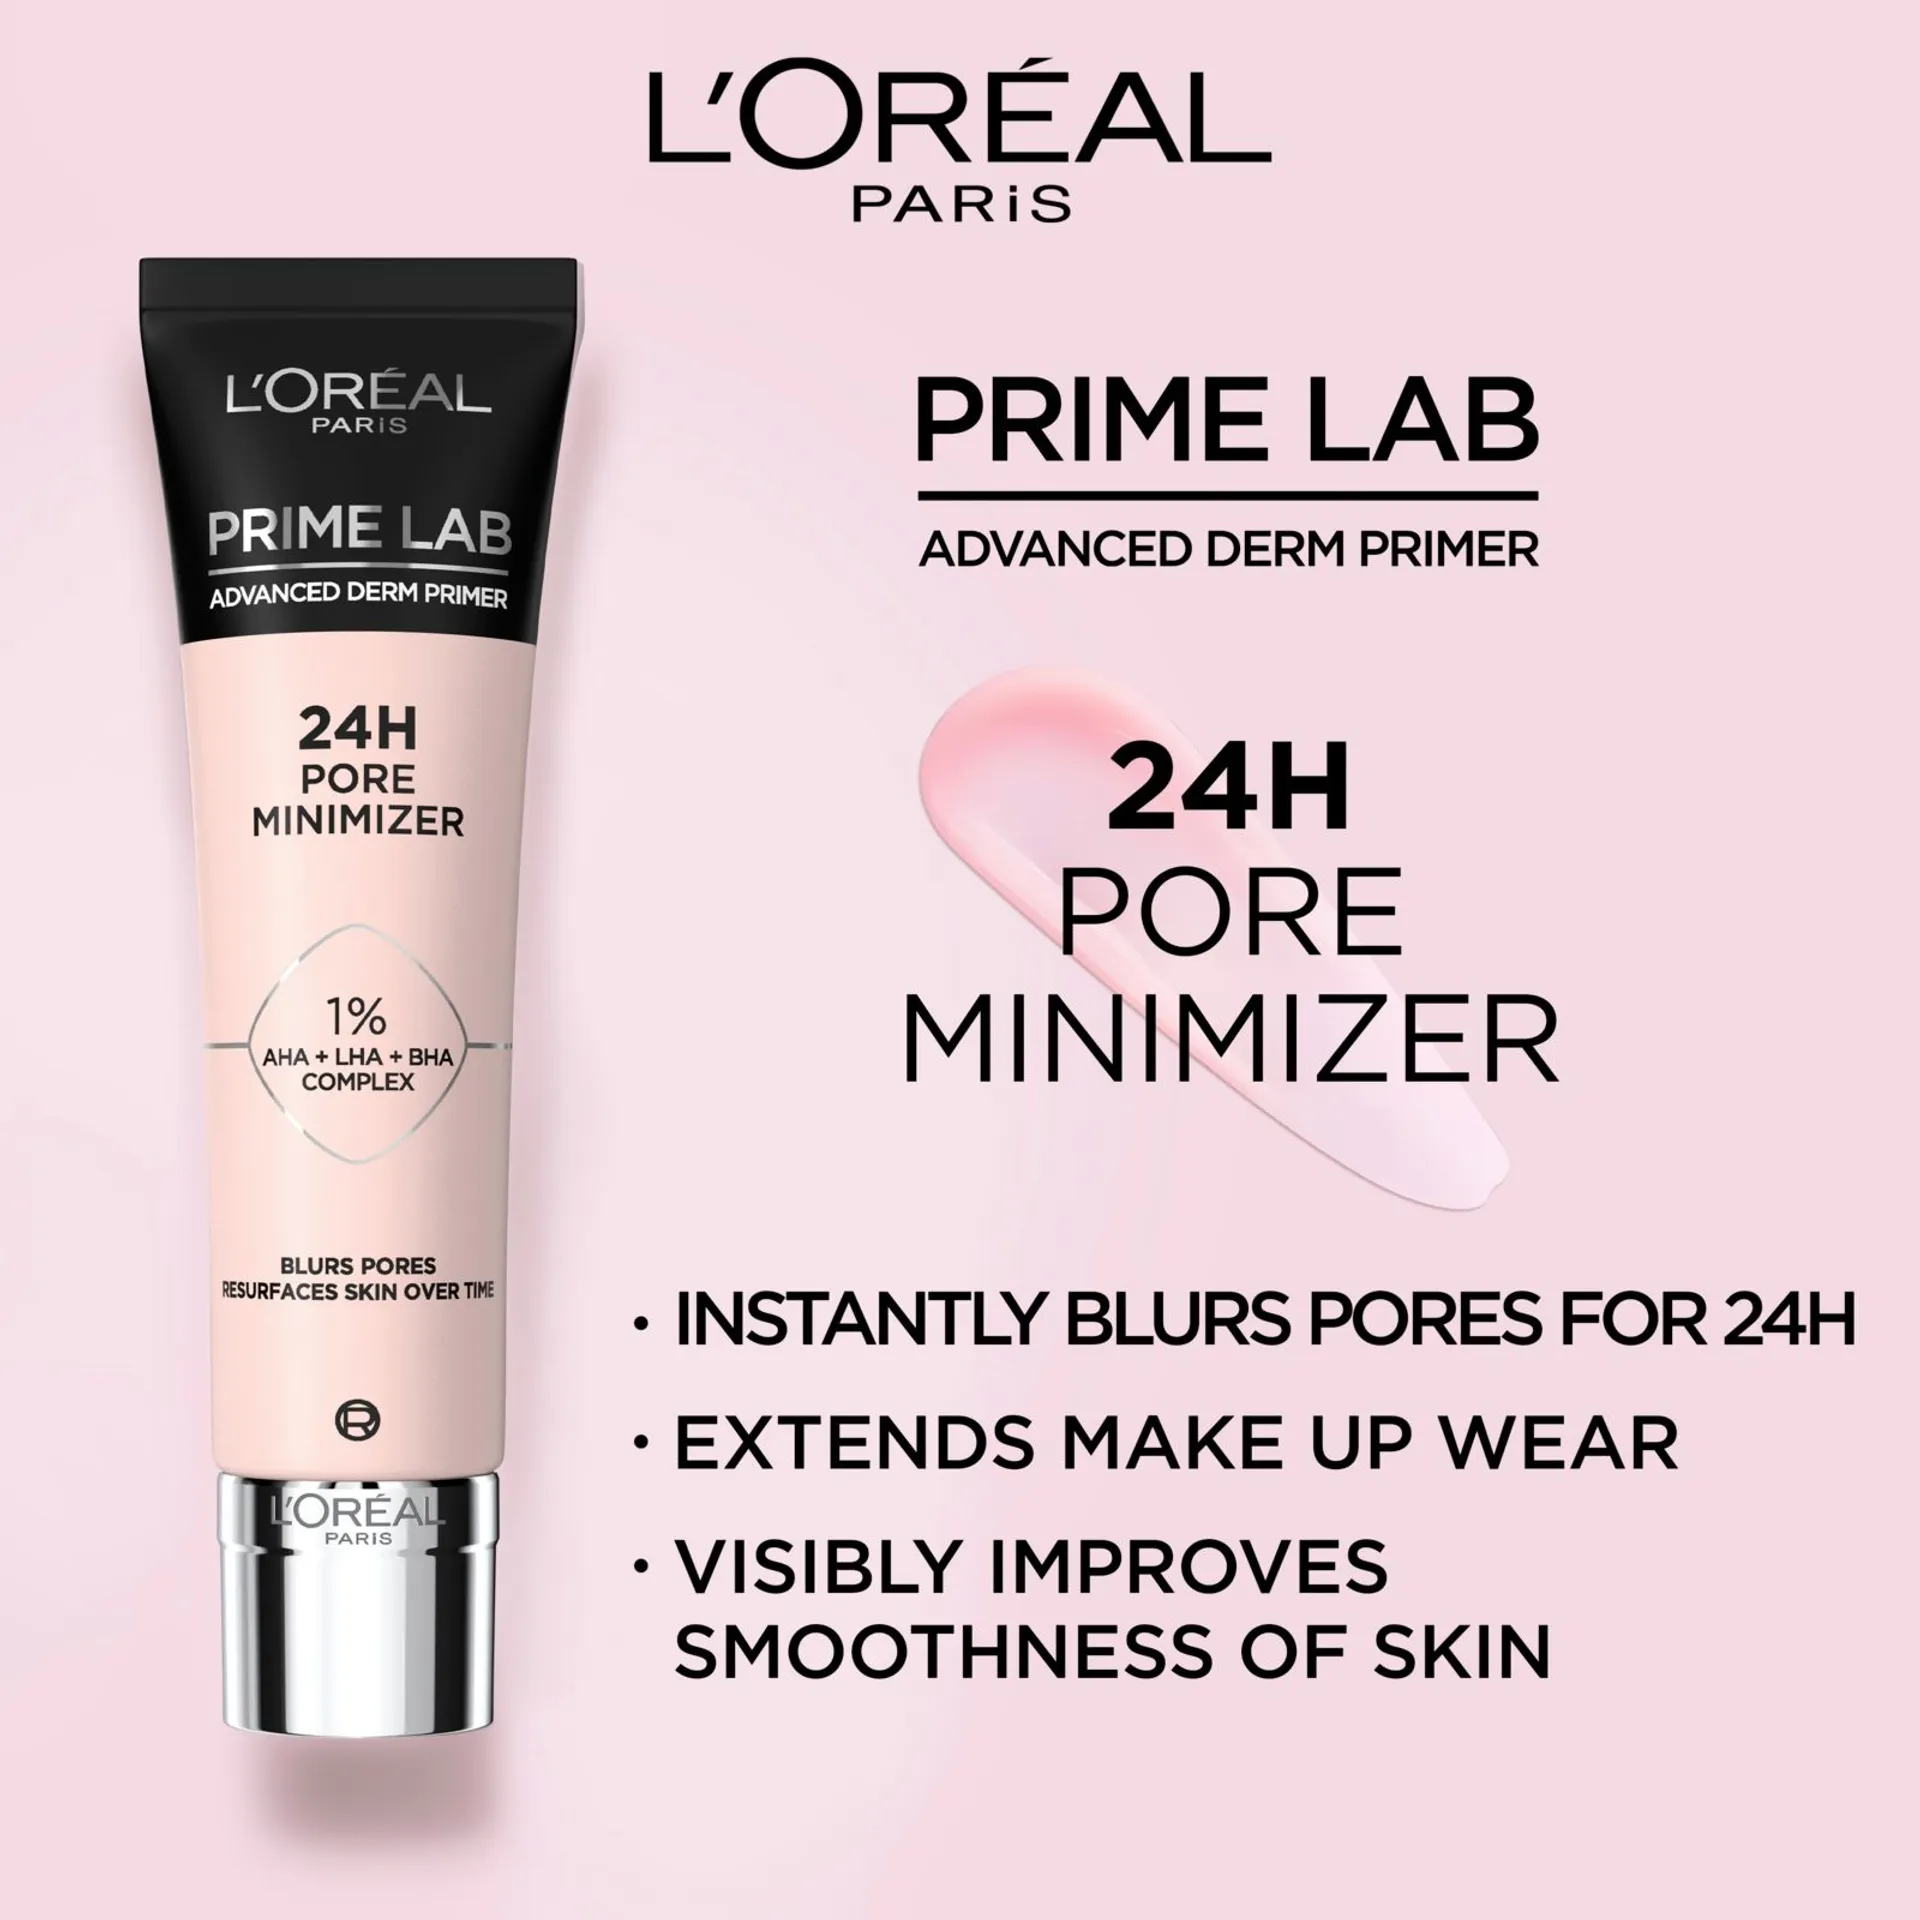 L'Oréal Paris Prime Lab Advanced Derm Primer 24H Pore Minimizer pohjustusvoide 30ml - 2